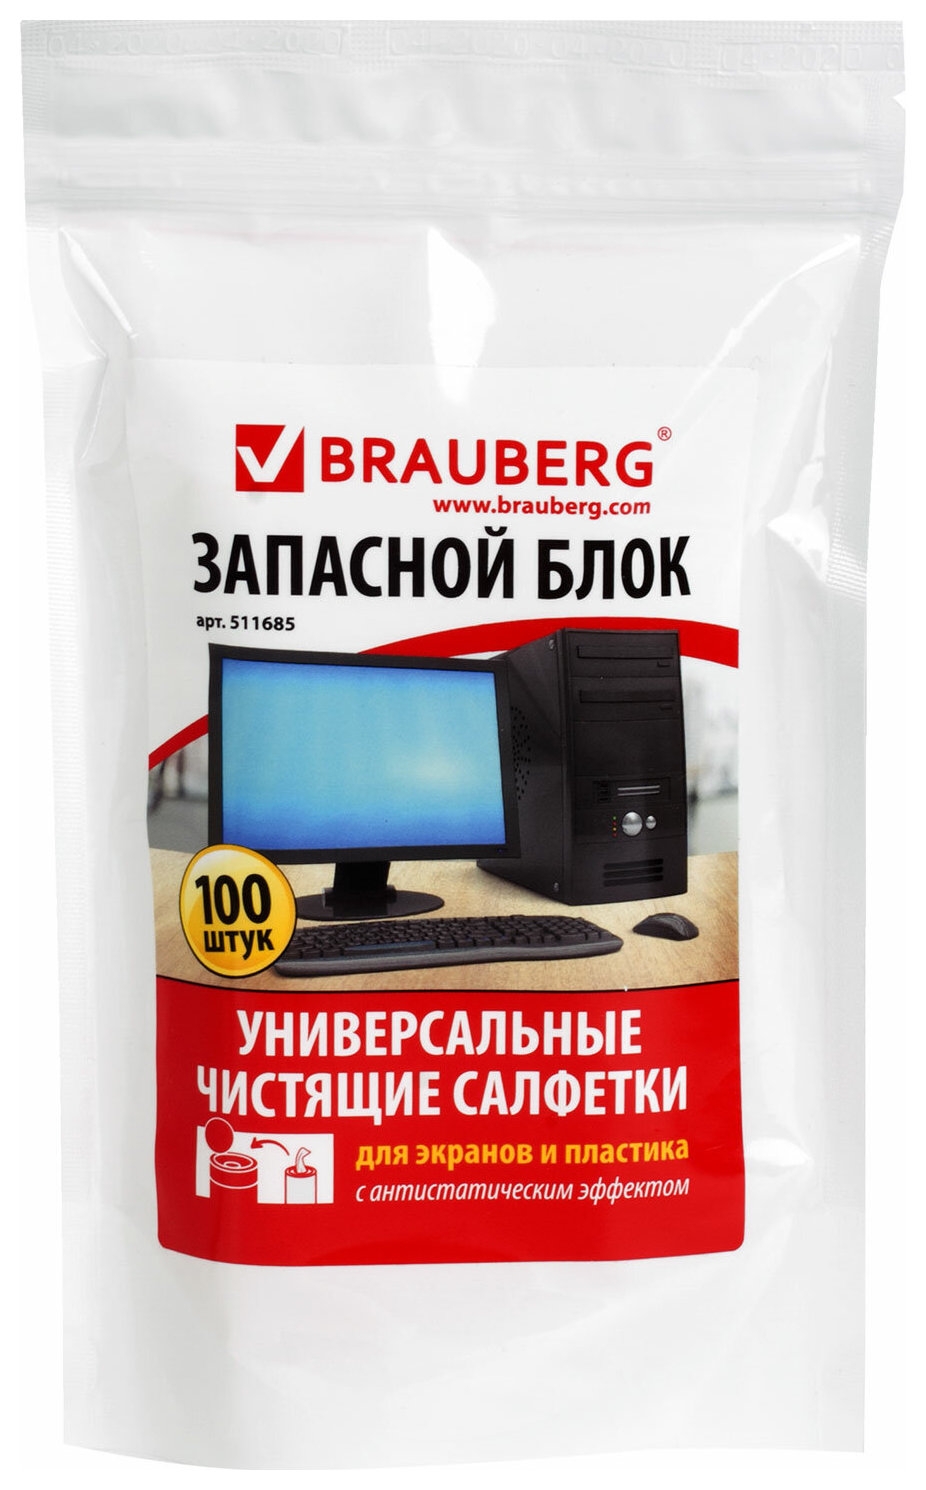 Салфетки для экранов всех типов и пластика (Запасной блок) Brauberg, пакет 100 шт., влажные, 511685